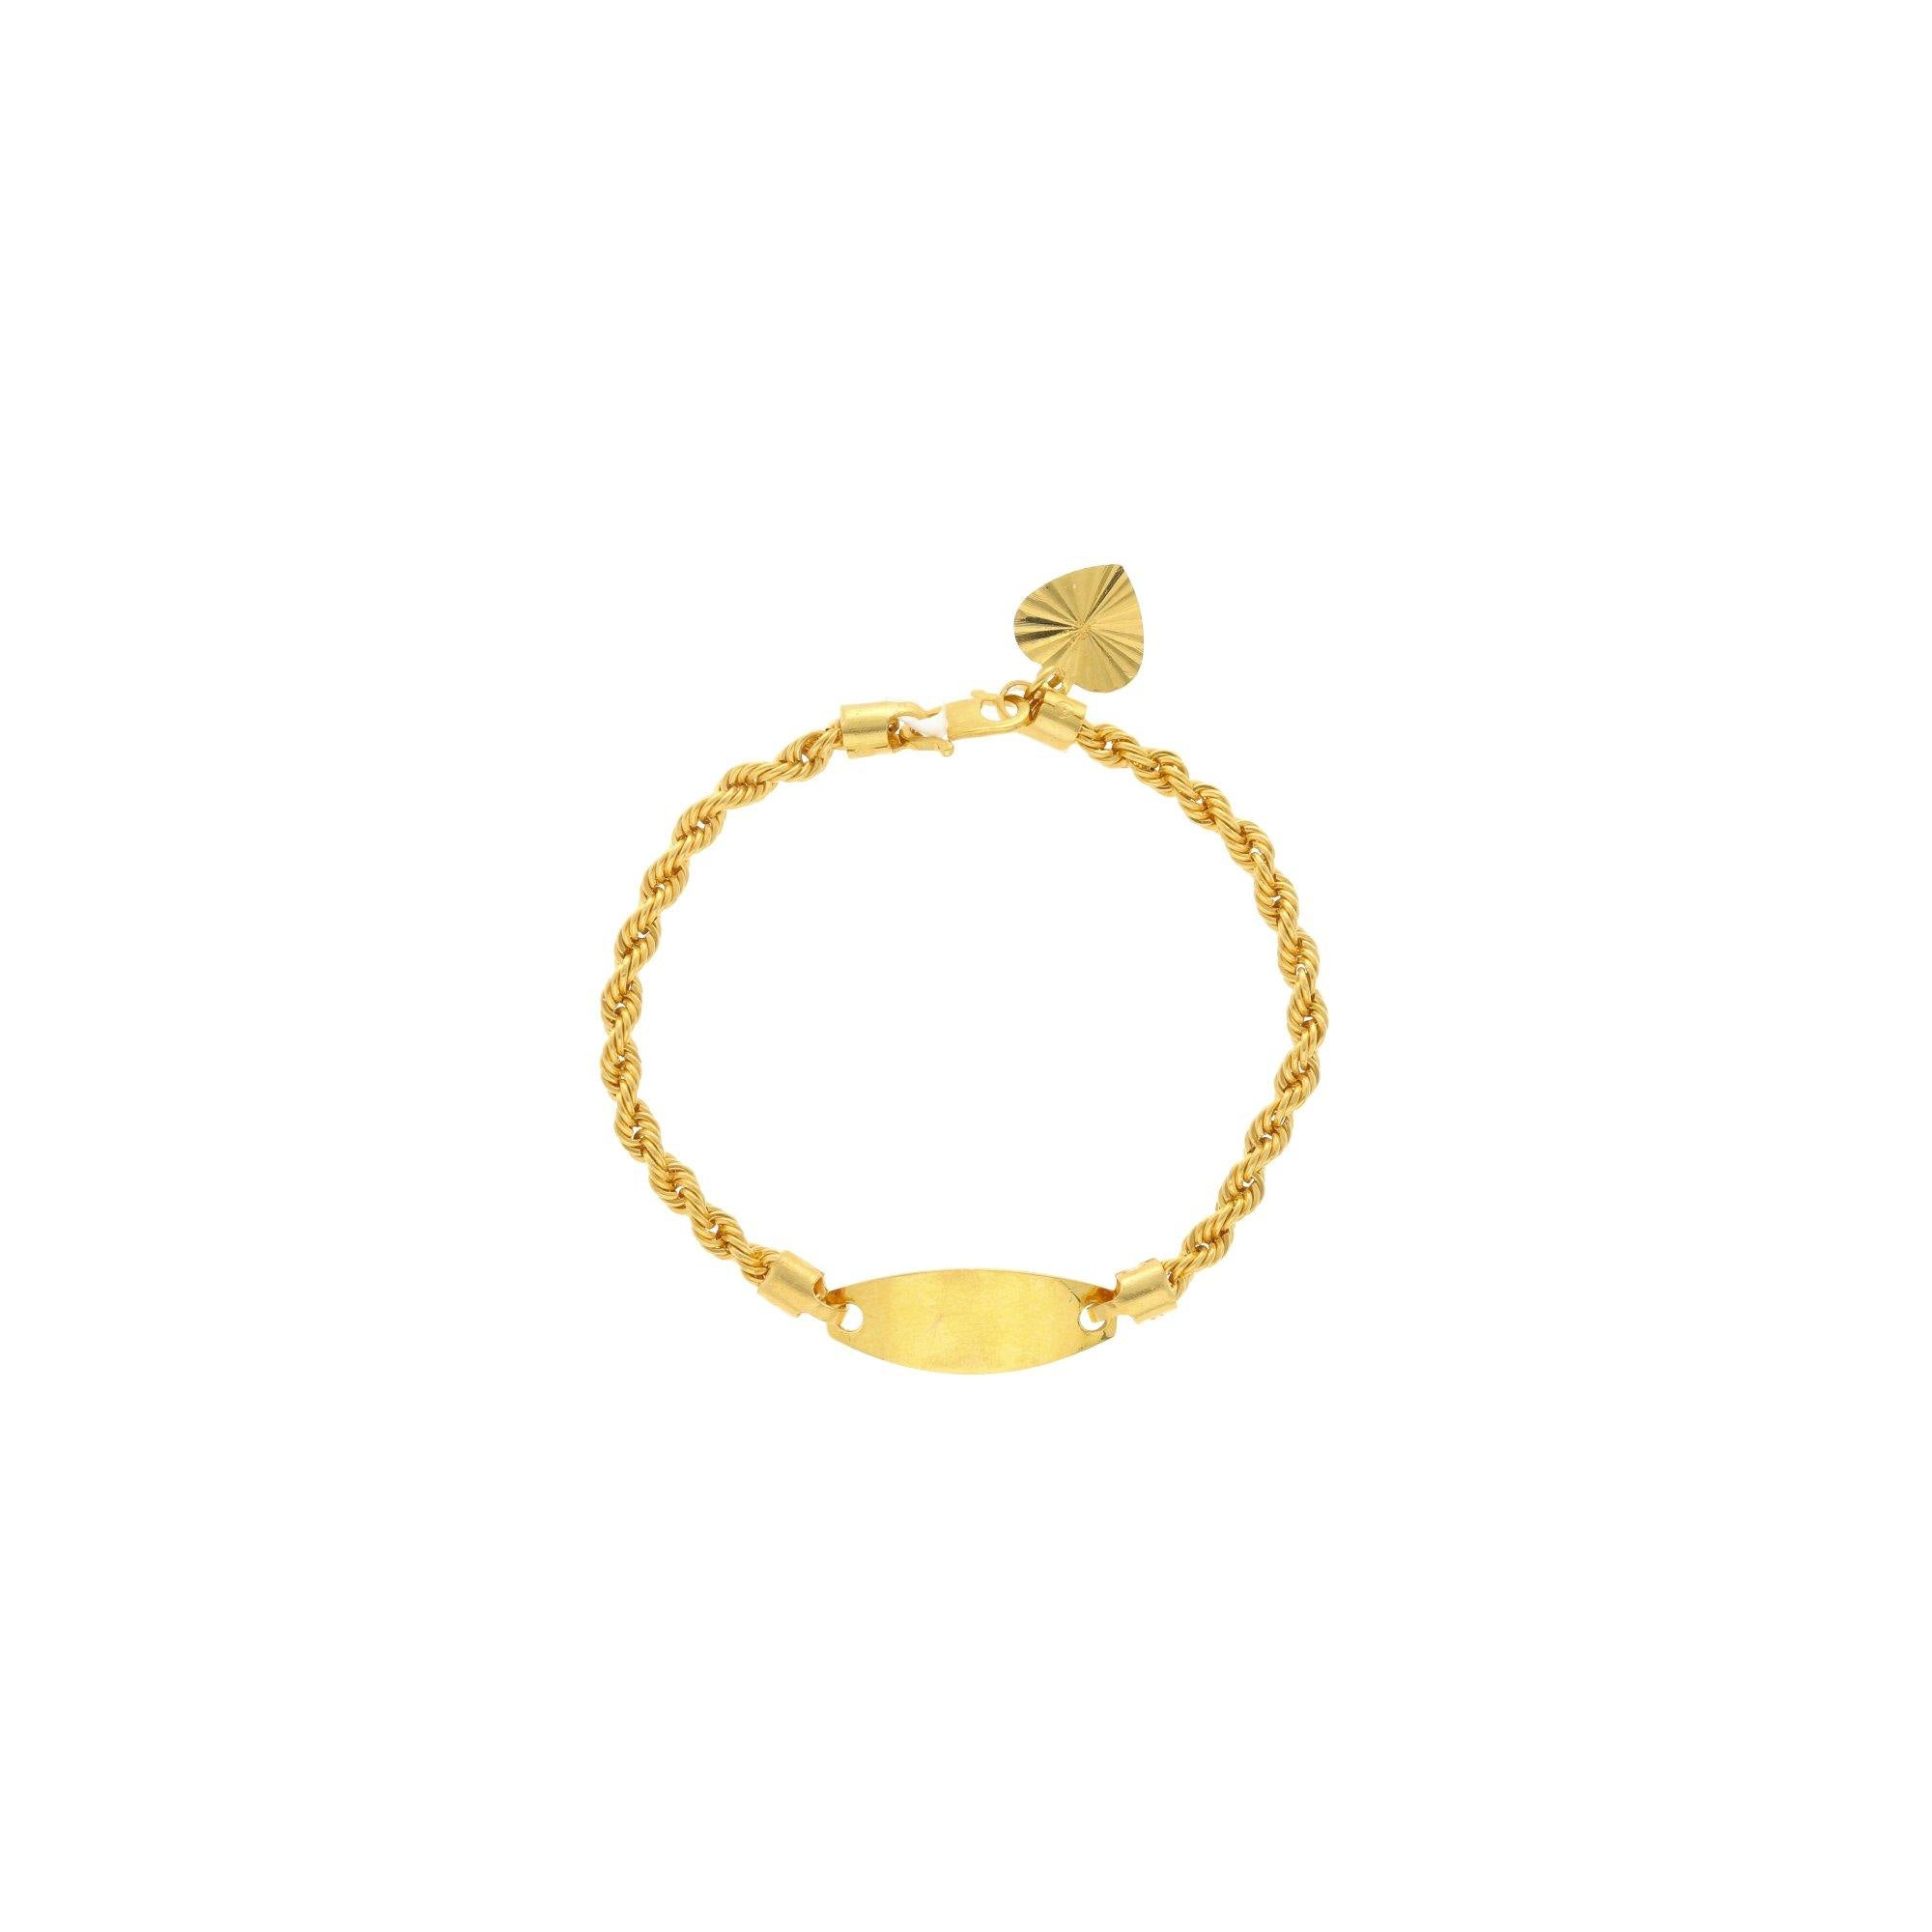 Buy Gold Bracelets for Women , Dainty Gold Chain Bracelet Sterling Silver ,  Twist Chain Bracelet , Minimalist Bracelet , Gift for Her Online in India -  Etsy